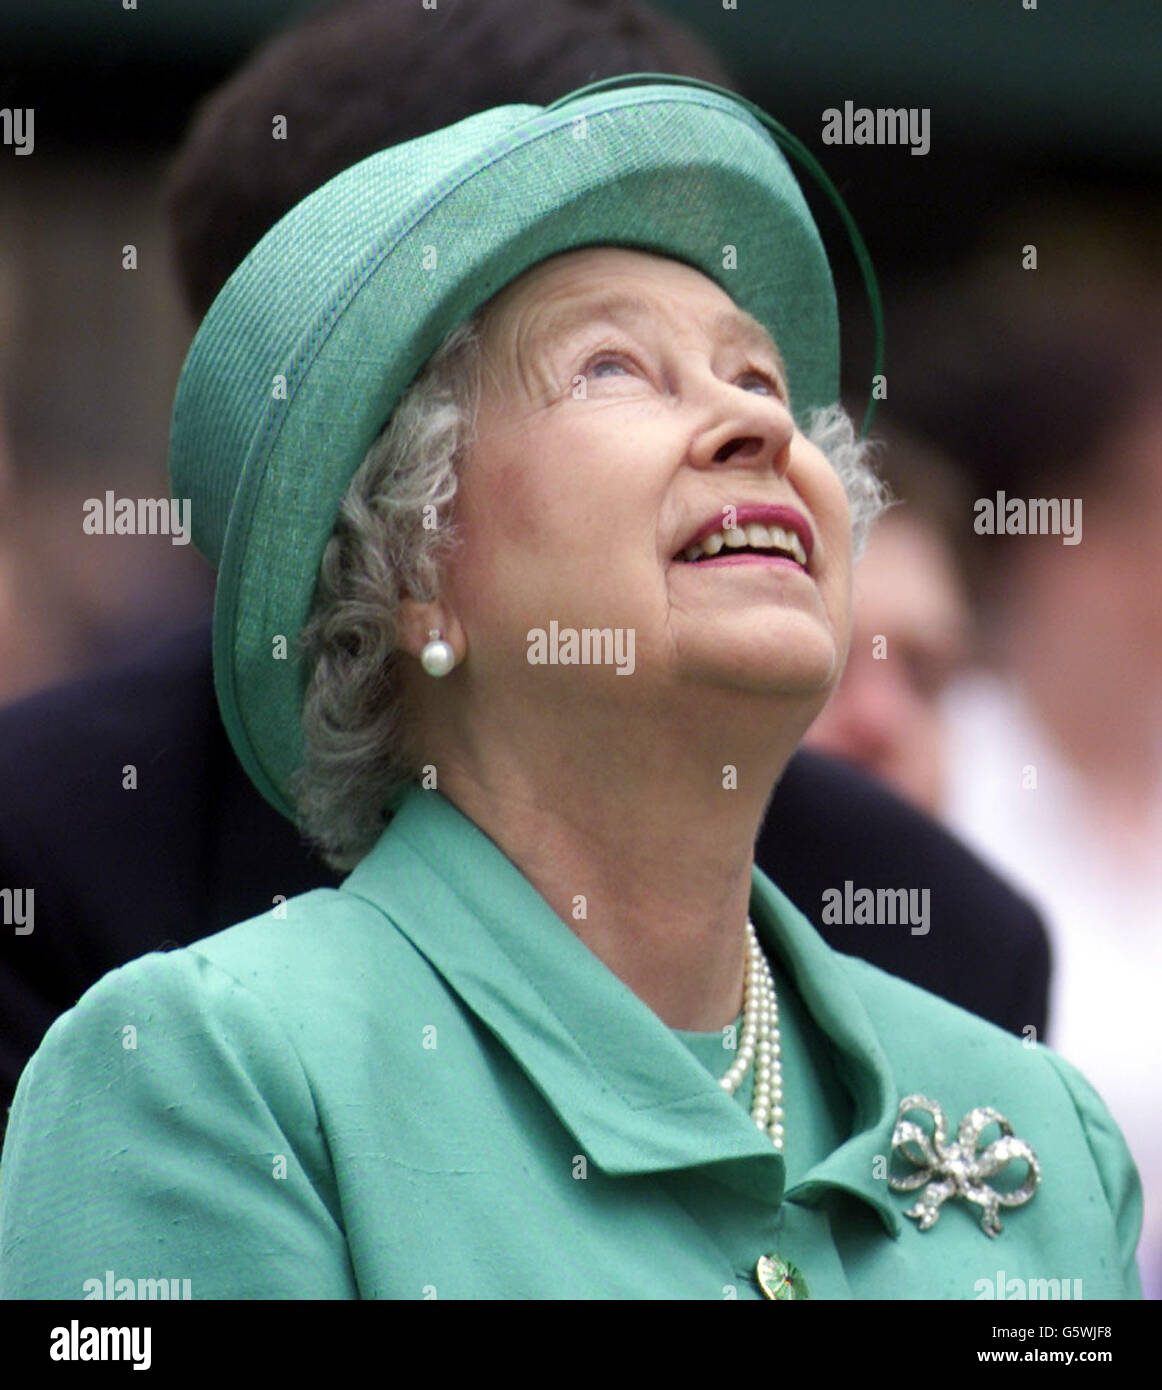 La Regina Elisabetta II fa un'indagine sul tempo durante la sua visita a Slough, nel Berkshire, nell'ambito delle celebrazioni del Giubileo d'Oro. Foto Stock